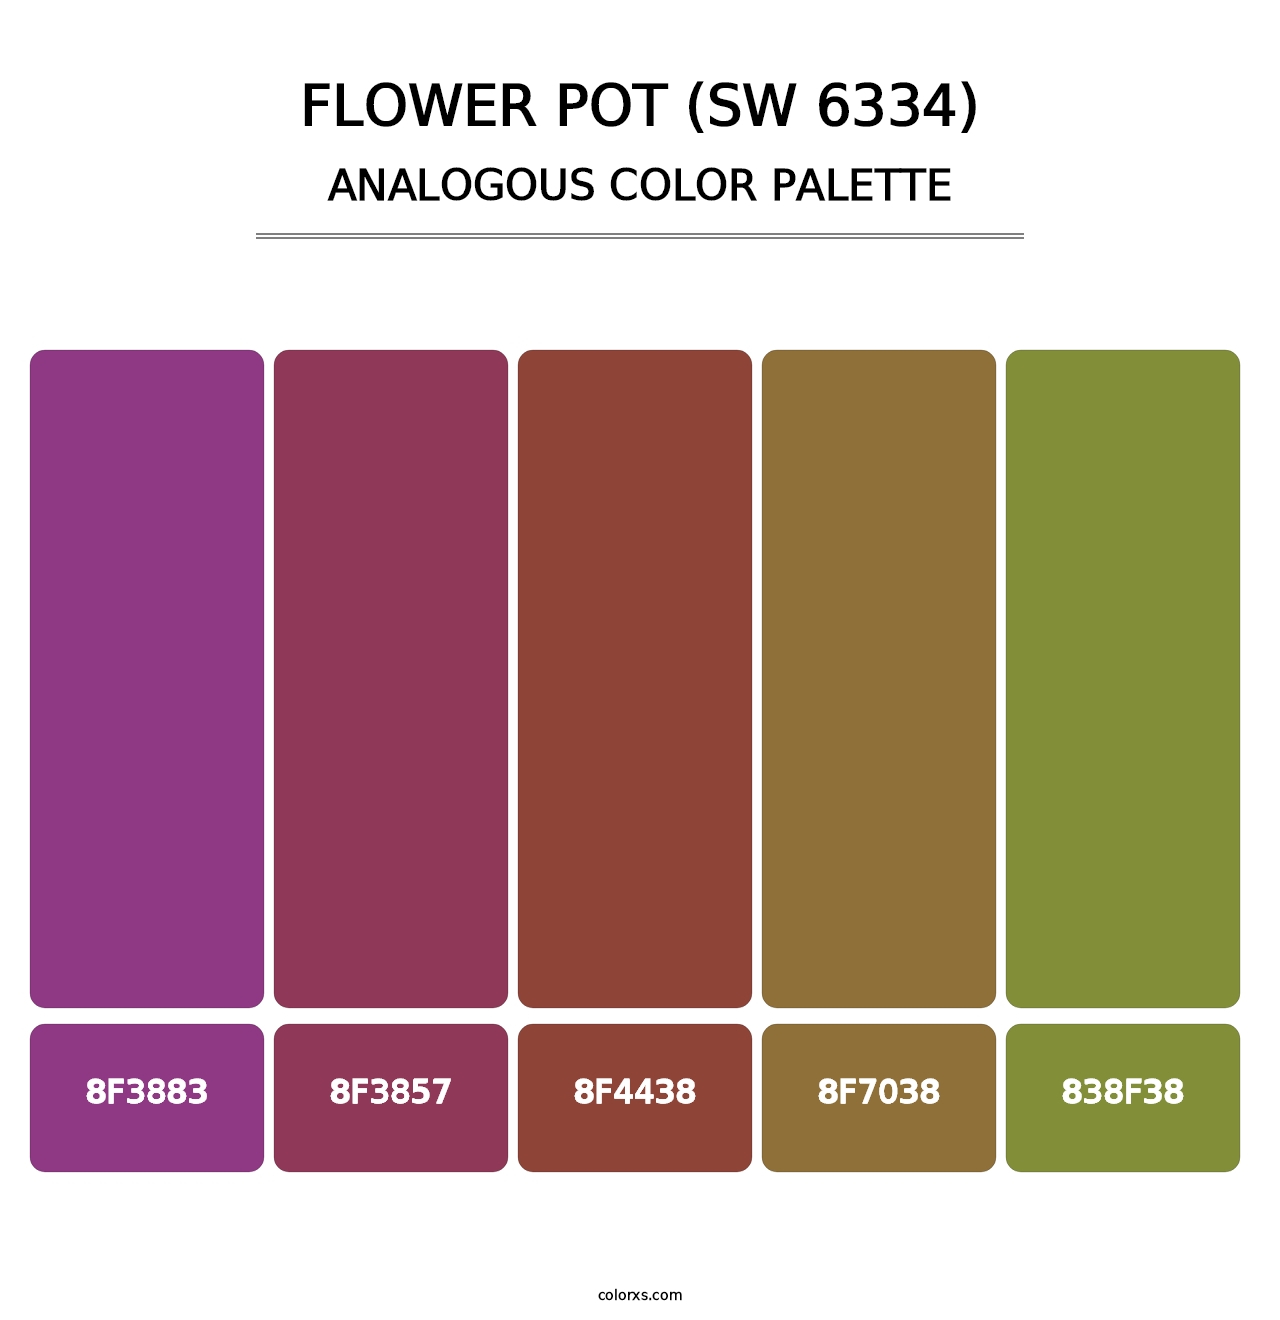 Flower Pot (SW 6334) - Analogous Color Palette